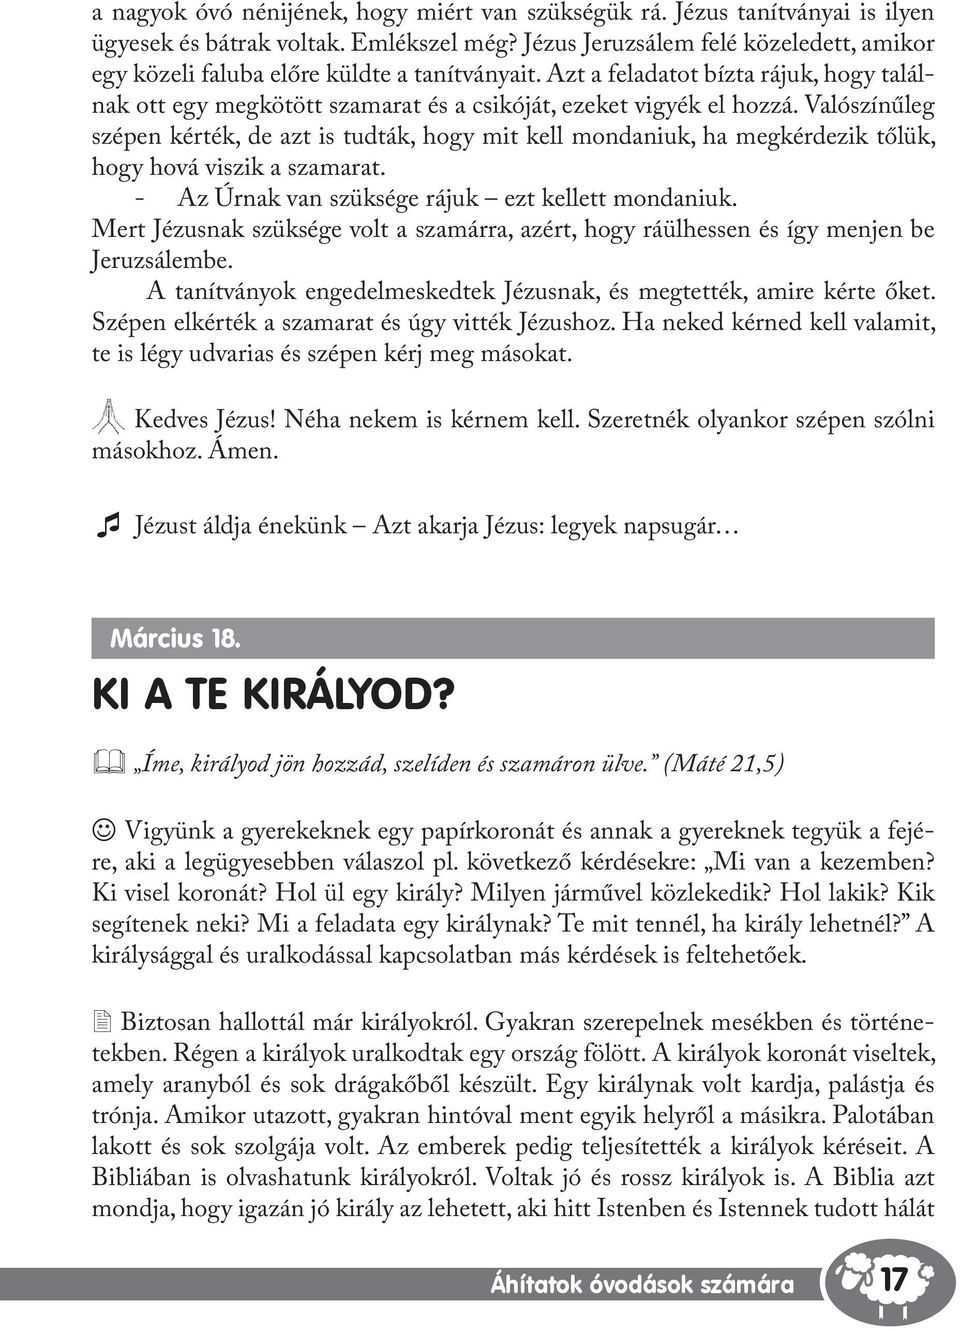 Dráviczki Csaba. Áhítatok óvodások számára III. Bárányka füzetek - PDF  Ingyenes letöltés